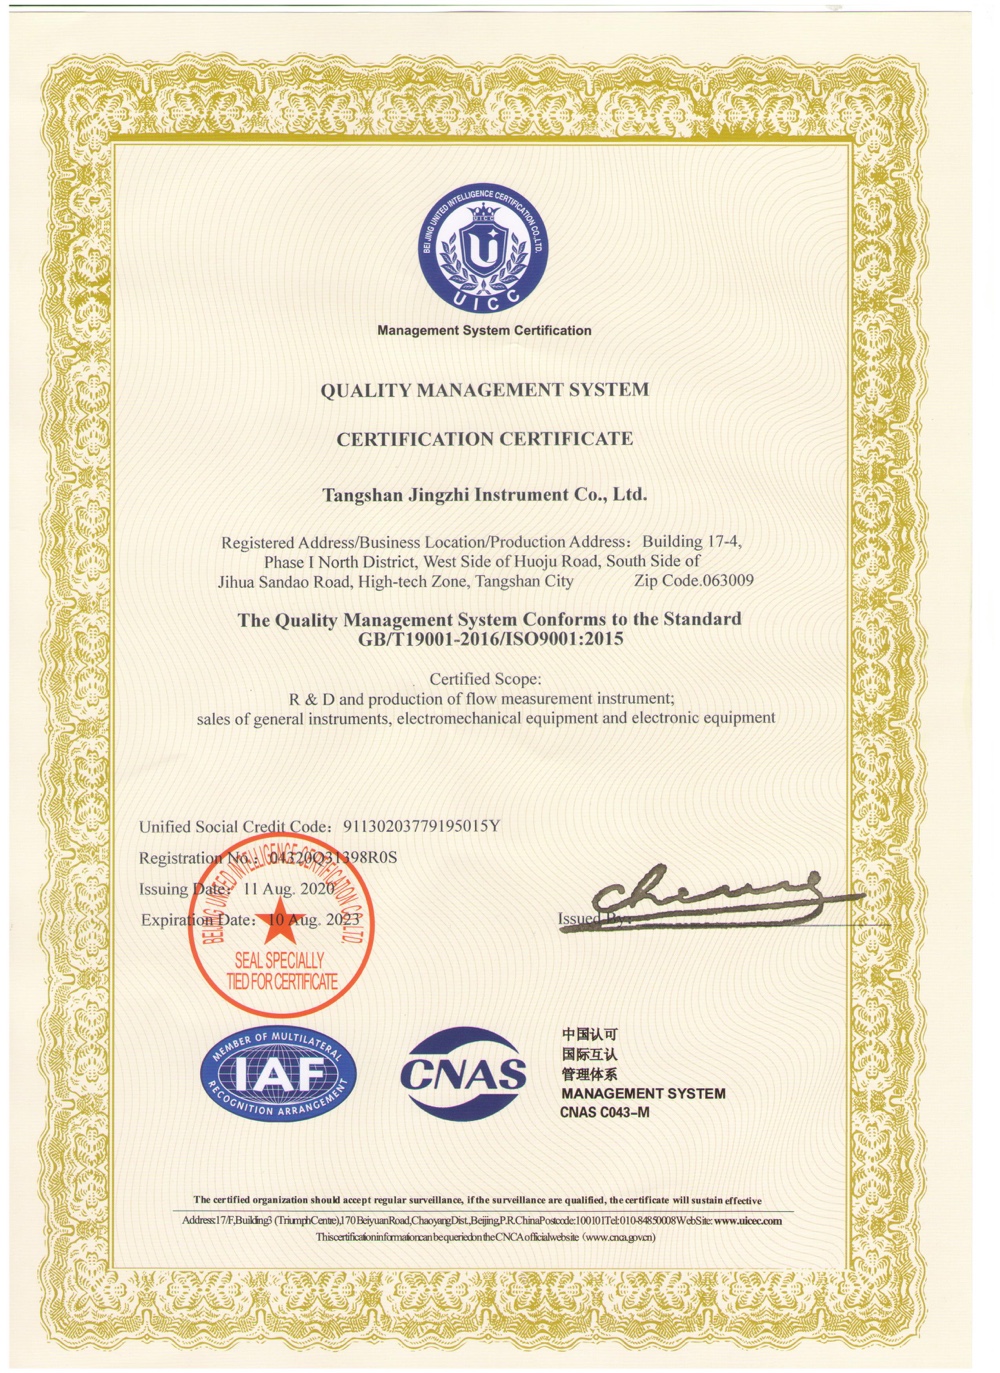 唐山精志儀器儀表有限公司公司資質 ISO9000